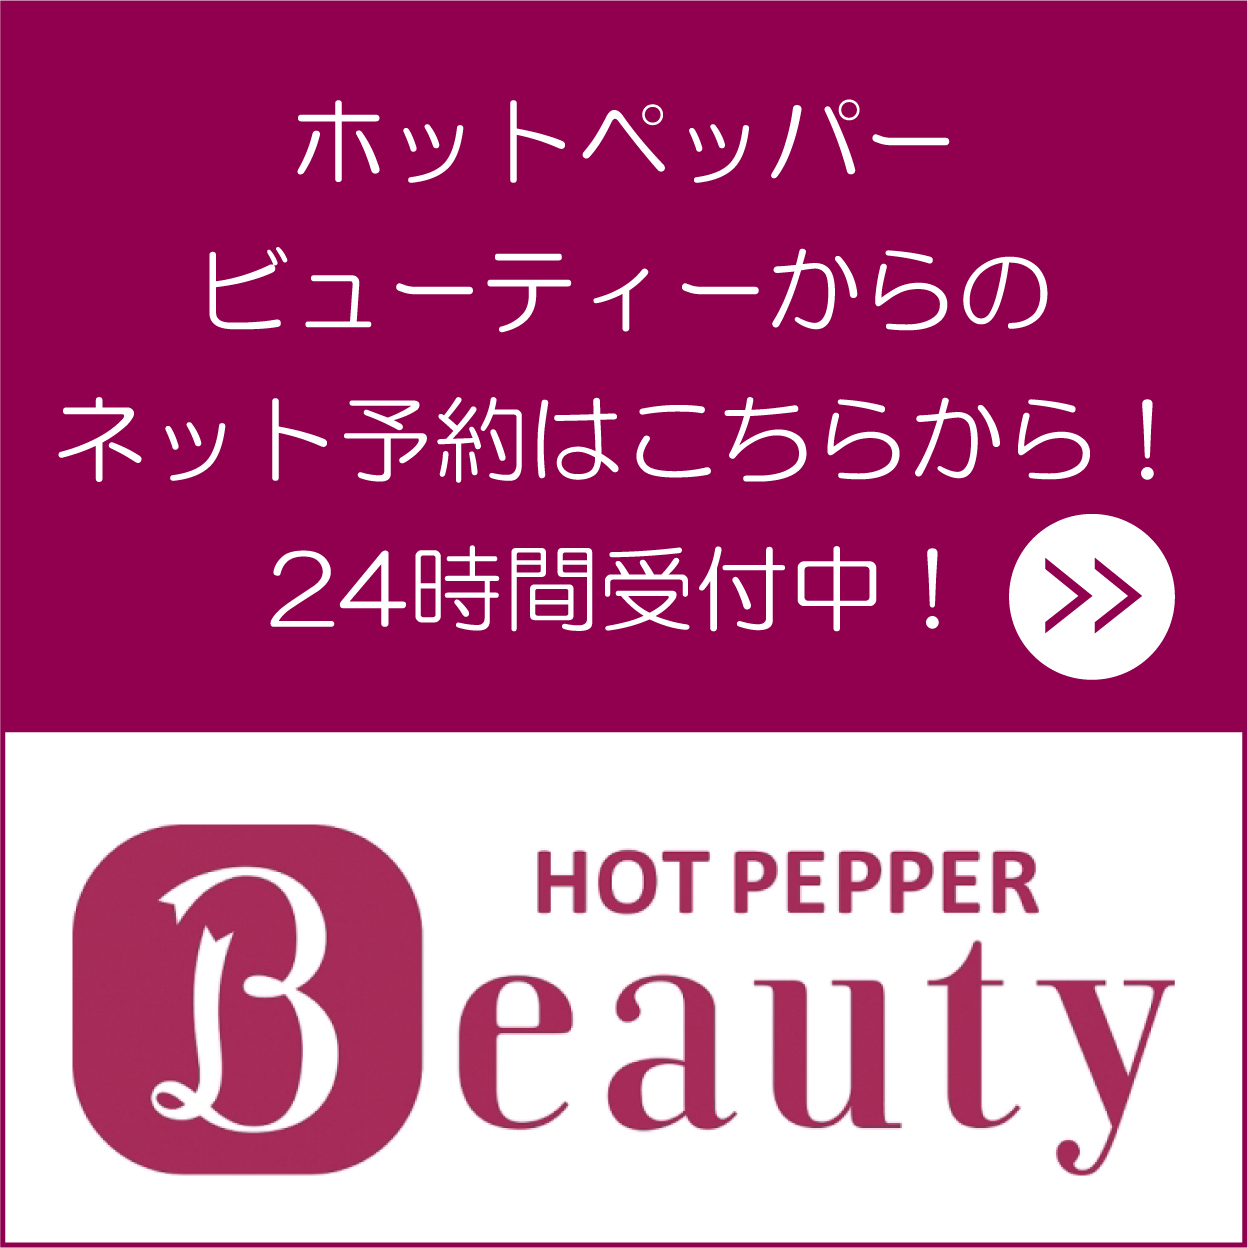 hotpepper-kutikomi-yoyaku-murasaki.jpg